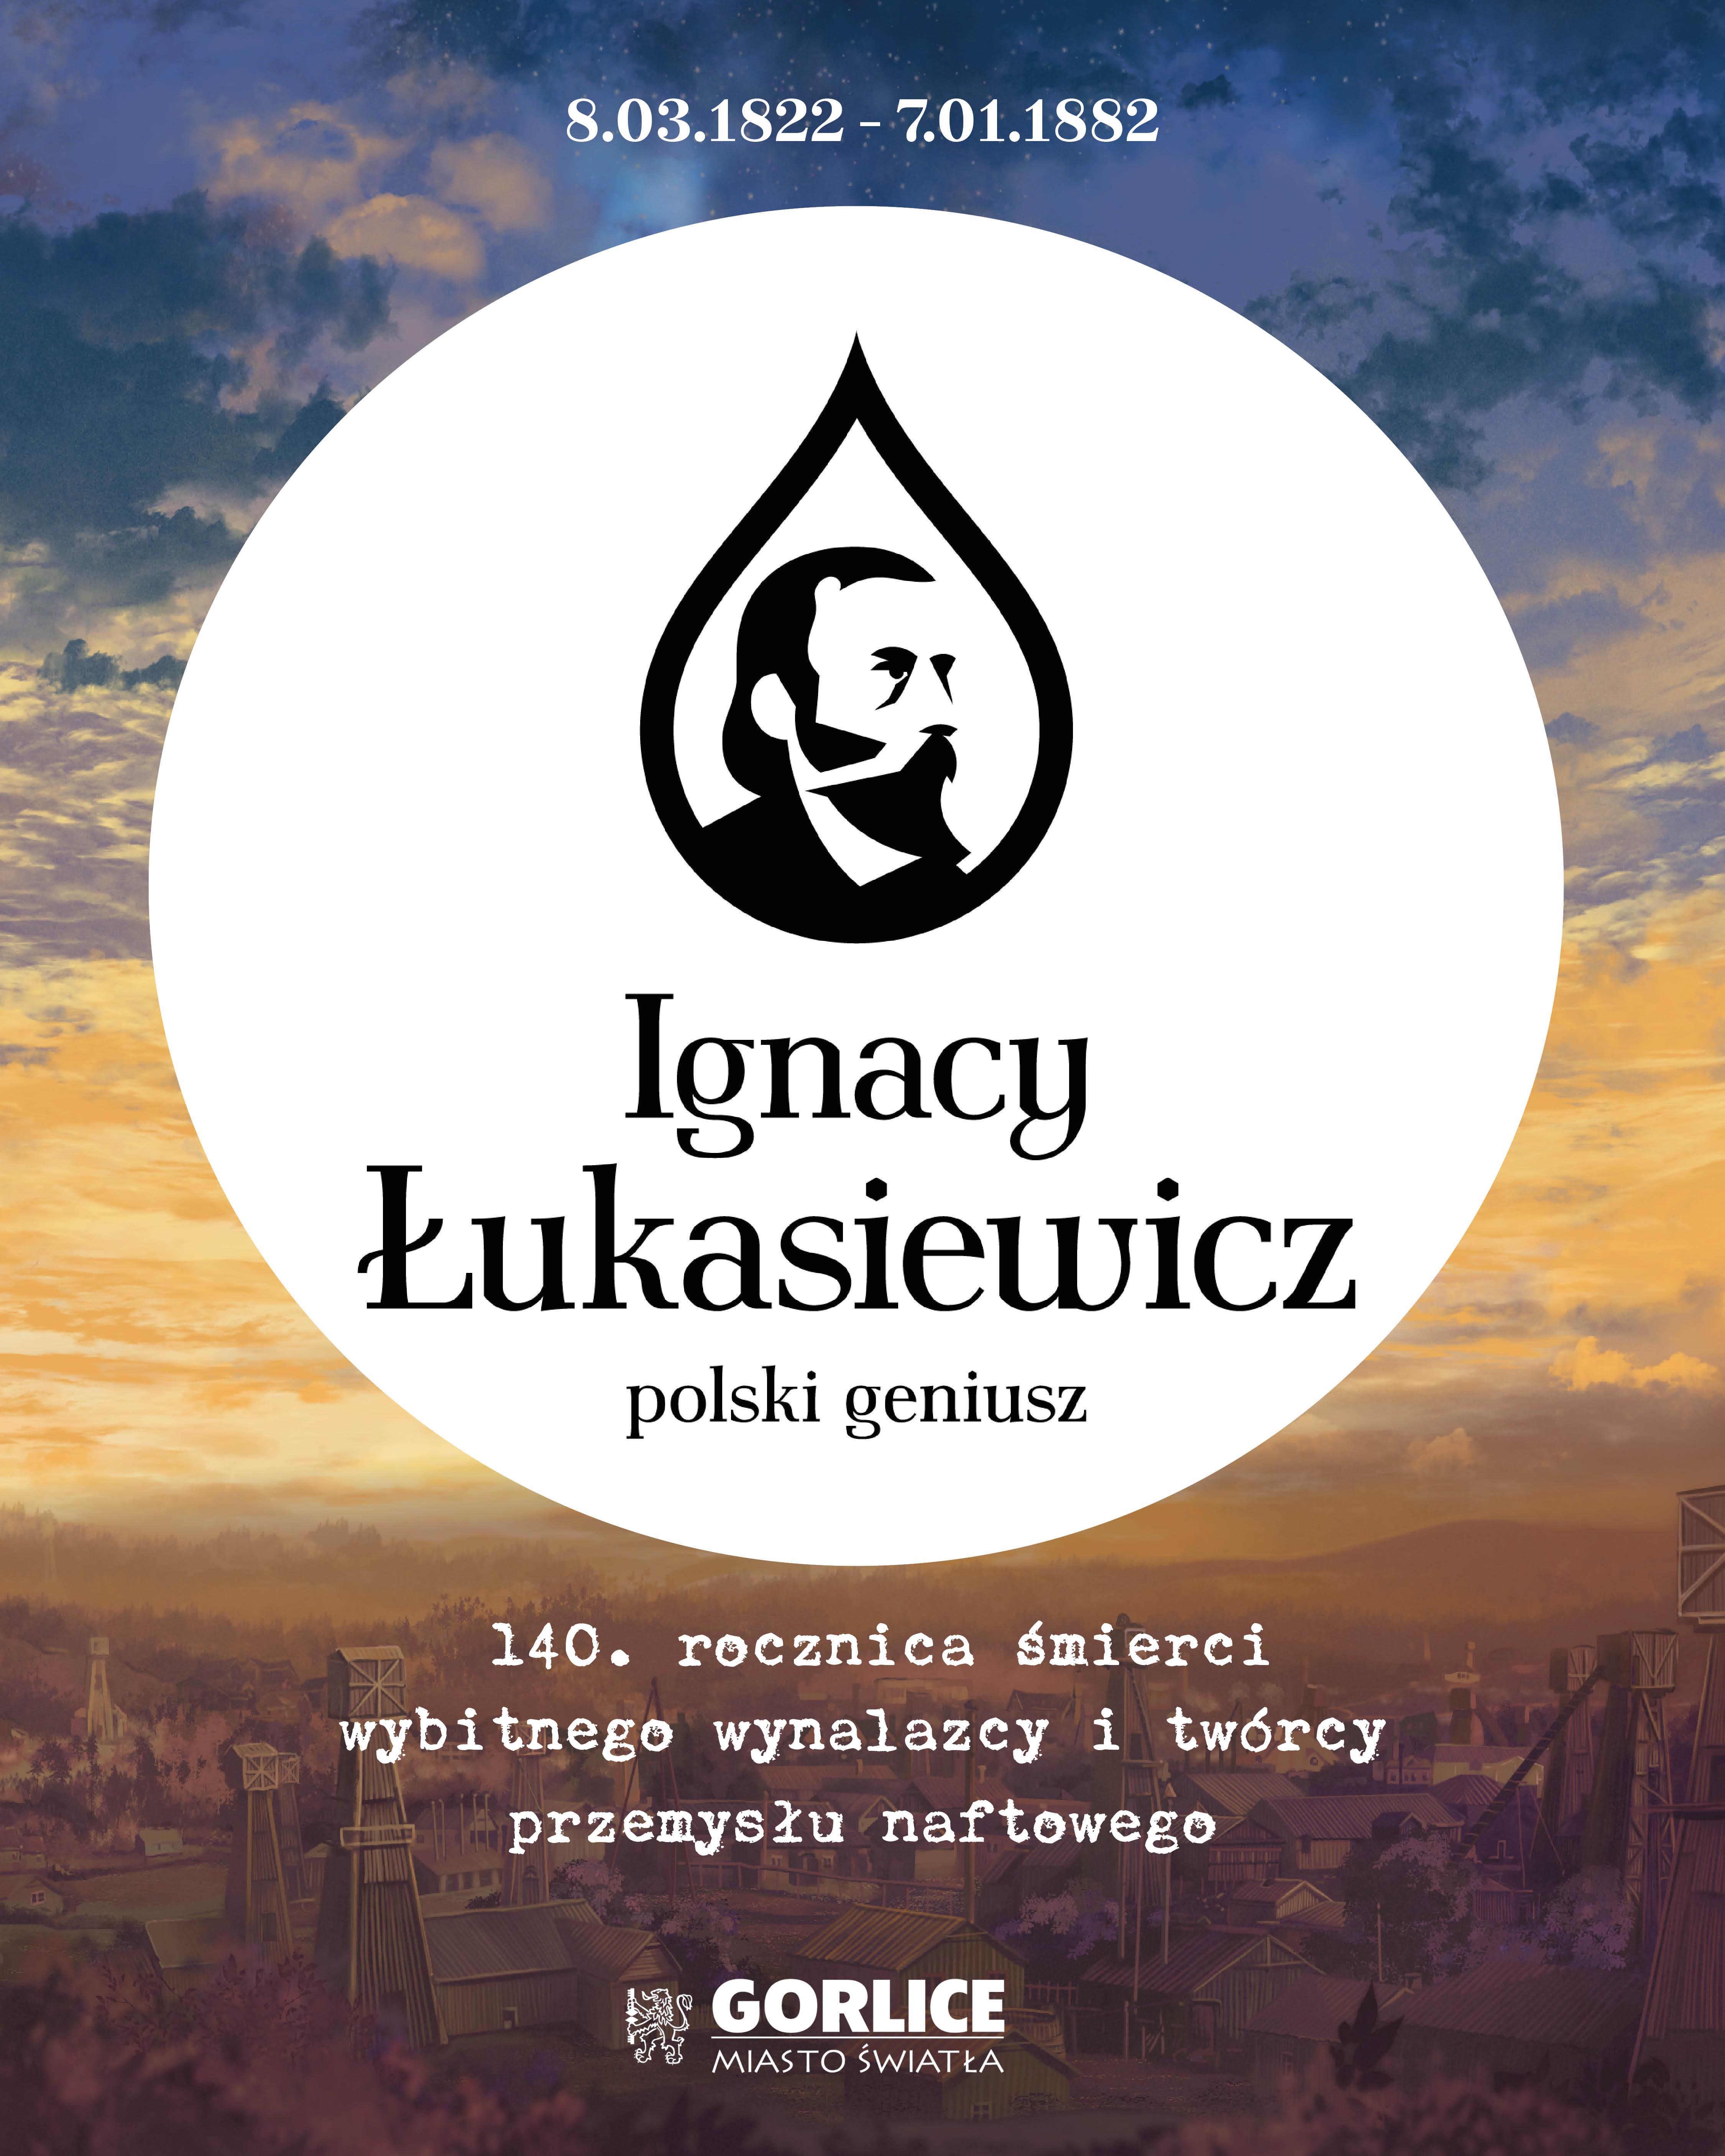 Infografika o rocznicy śmierci Łukasiewicza